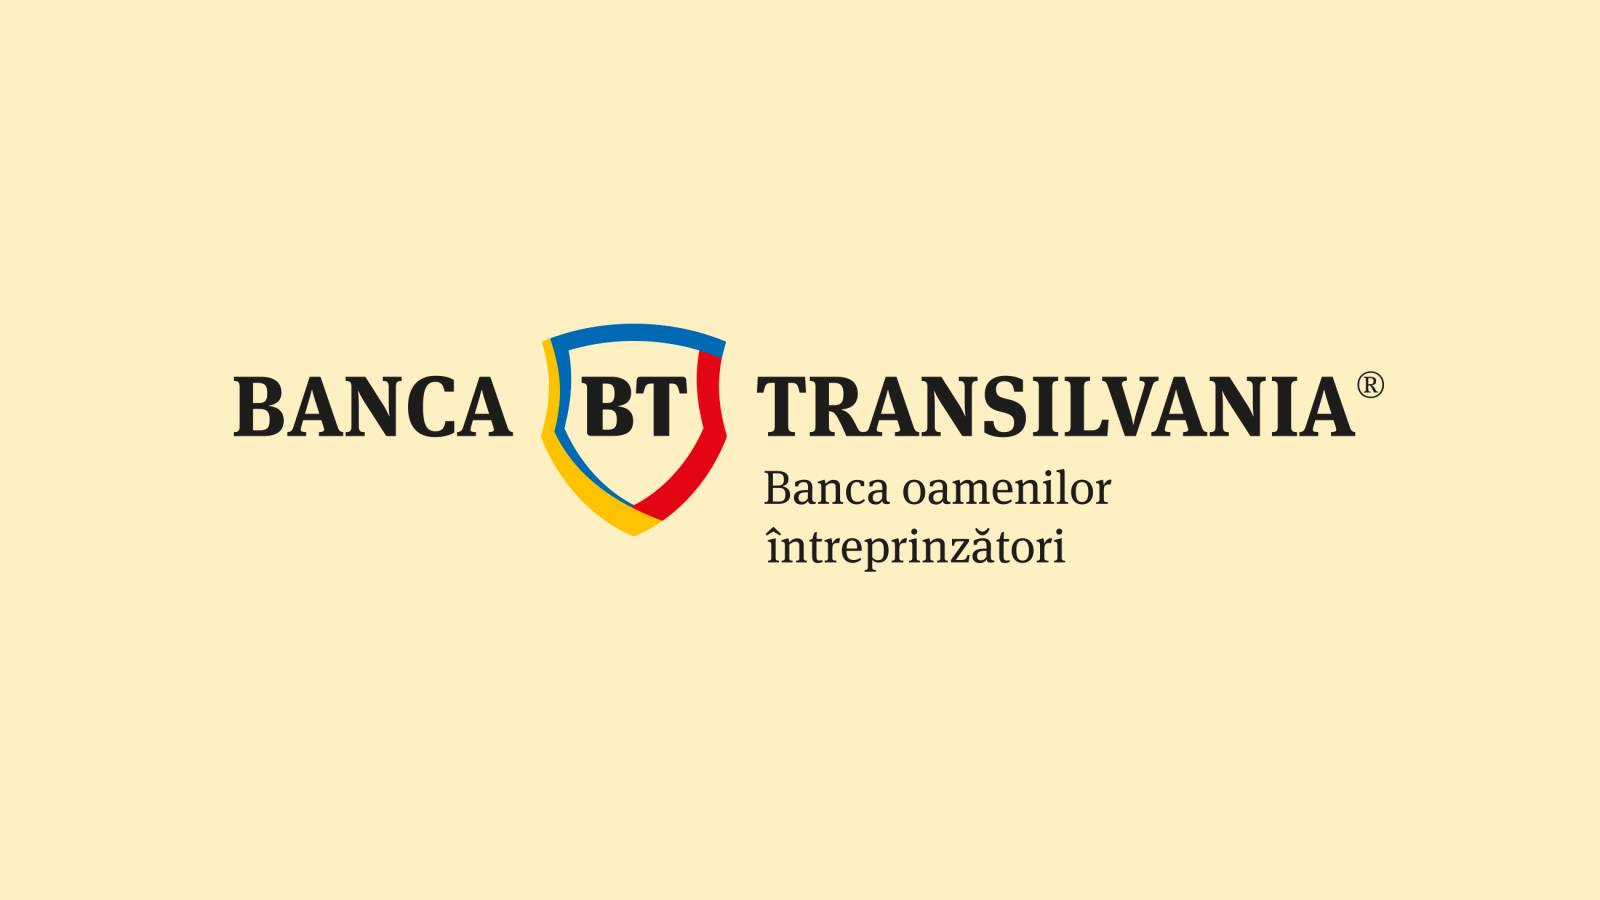 LAST MINUTE BANK La decisione di Transilvania ha un impatto su tutti i clienti